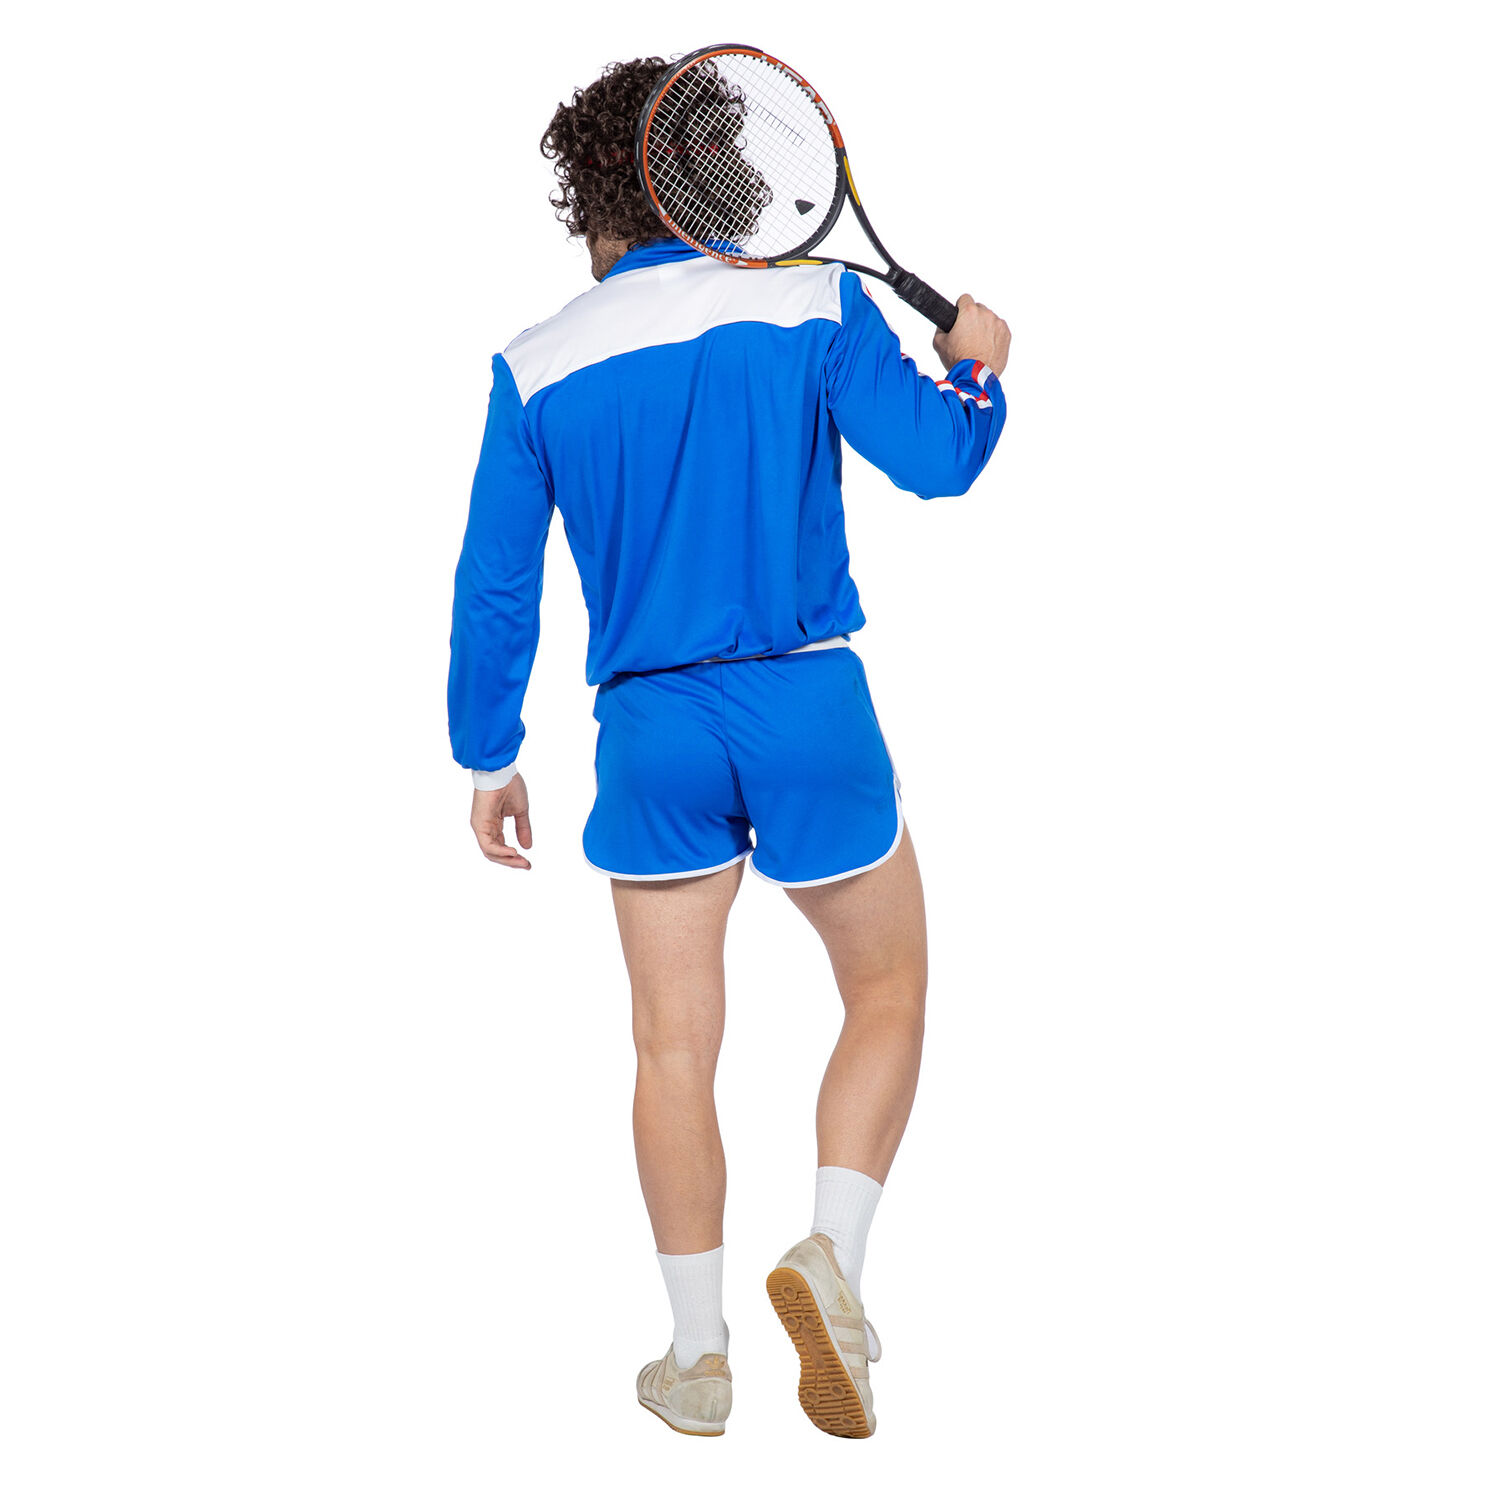 NEU Herren-Kostüm Tennis-Spieler, Jacke und kurze Hose, Gr. 48 Bild 3